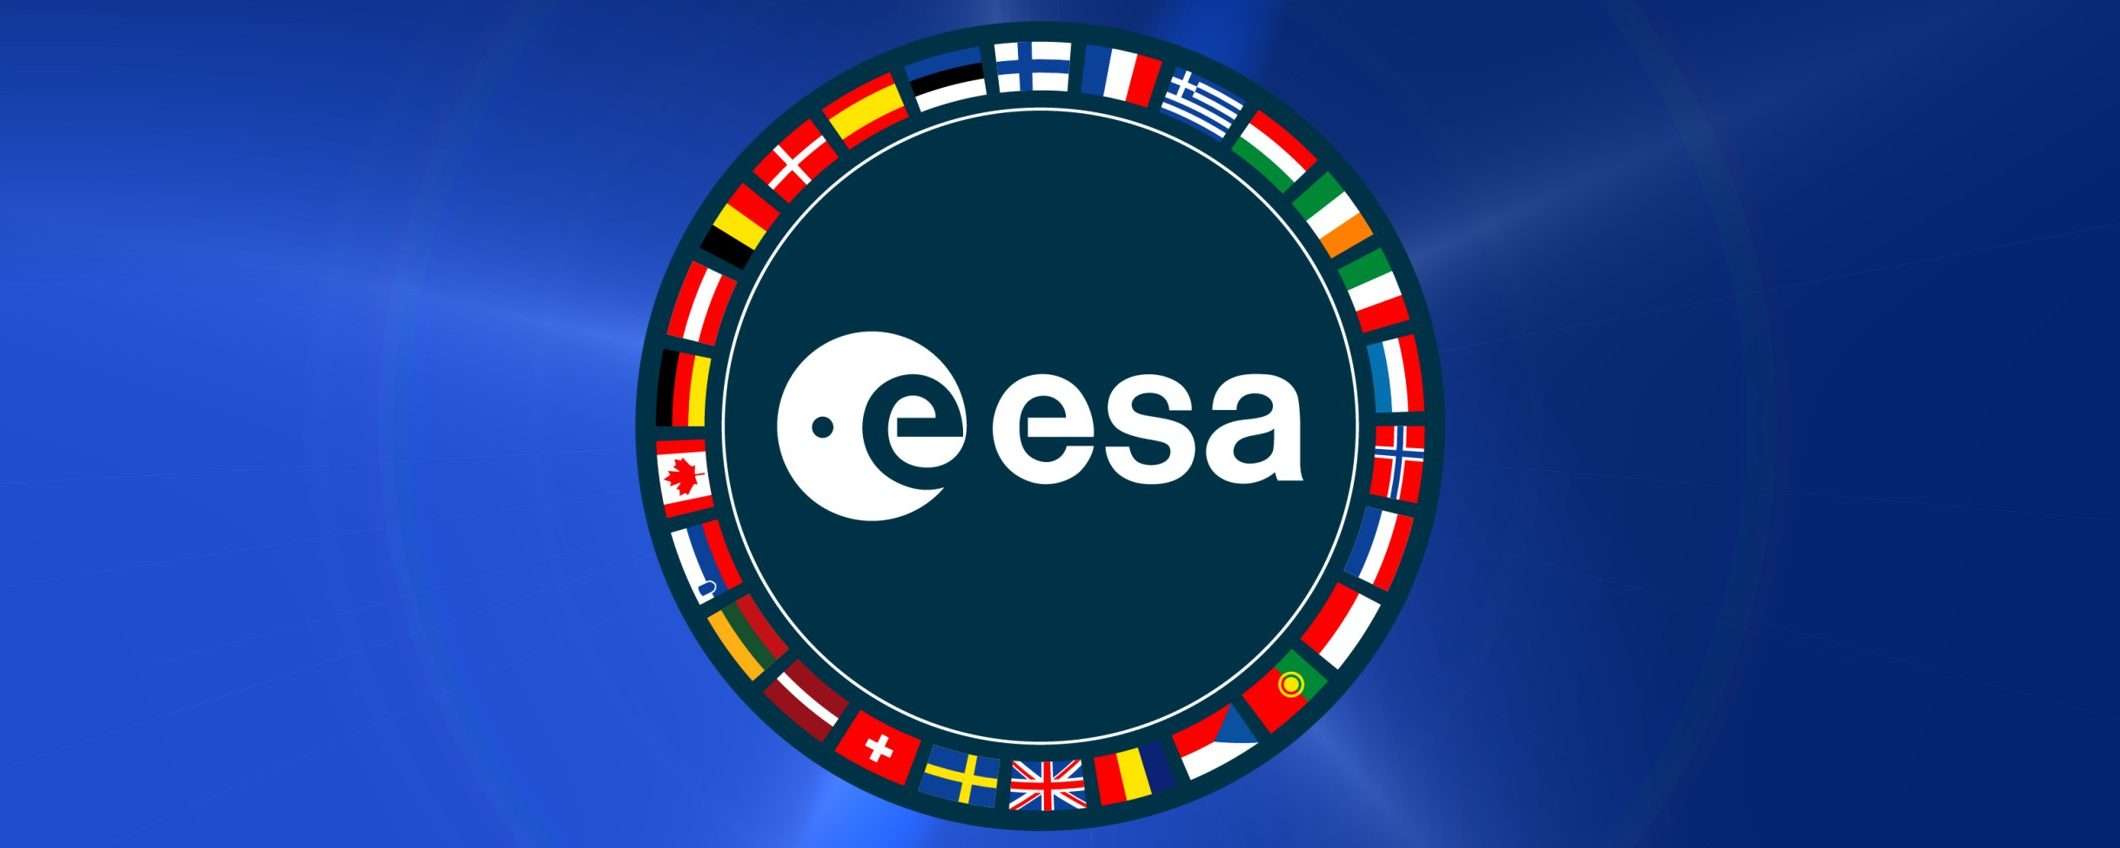 Luna 25: ESA interrompe collaborazione con Russia